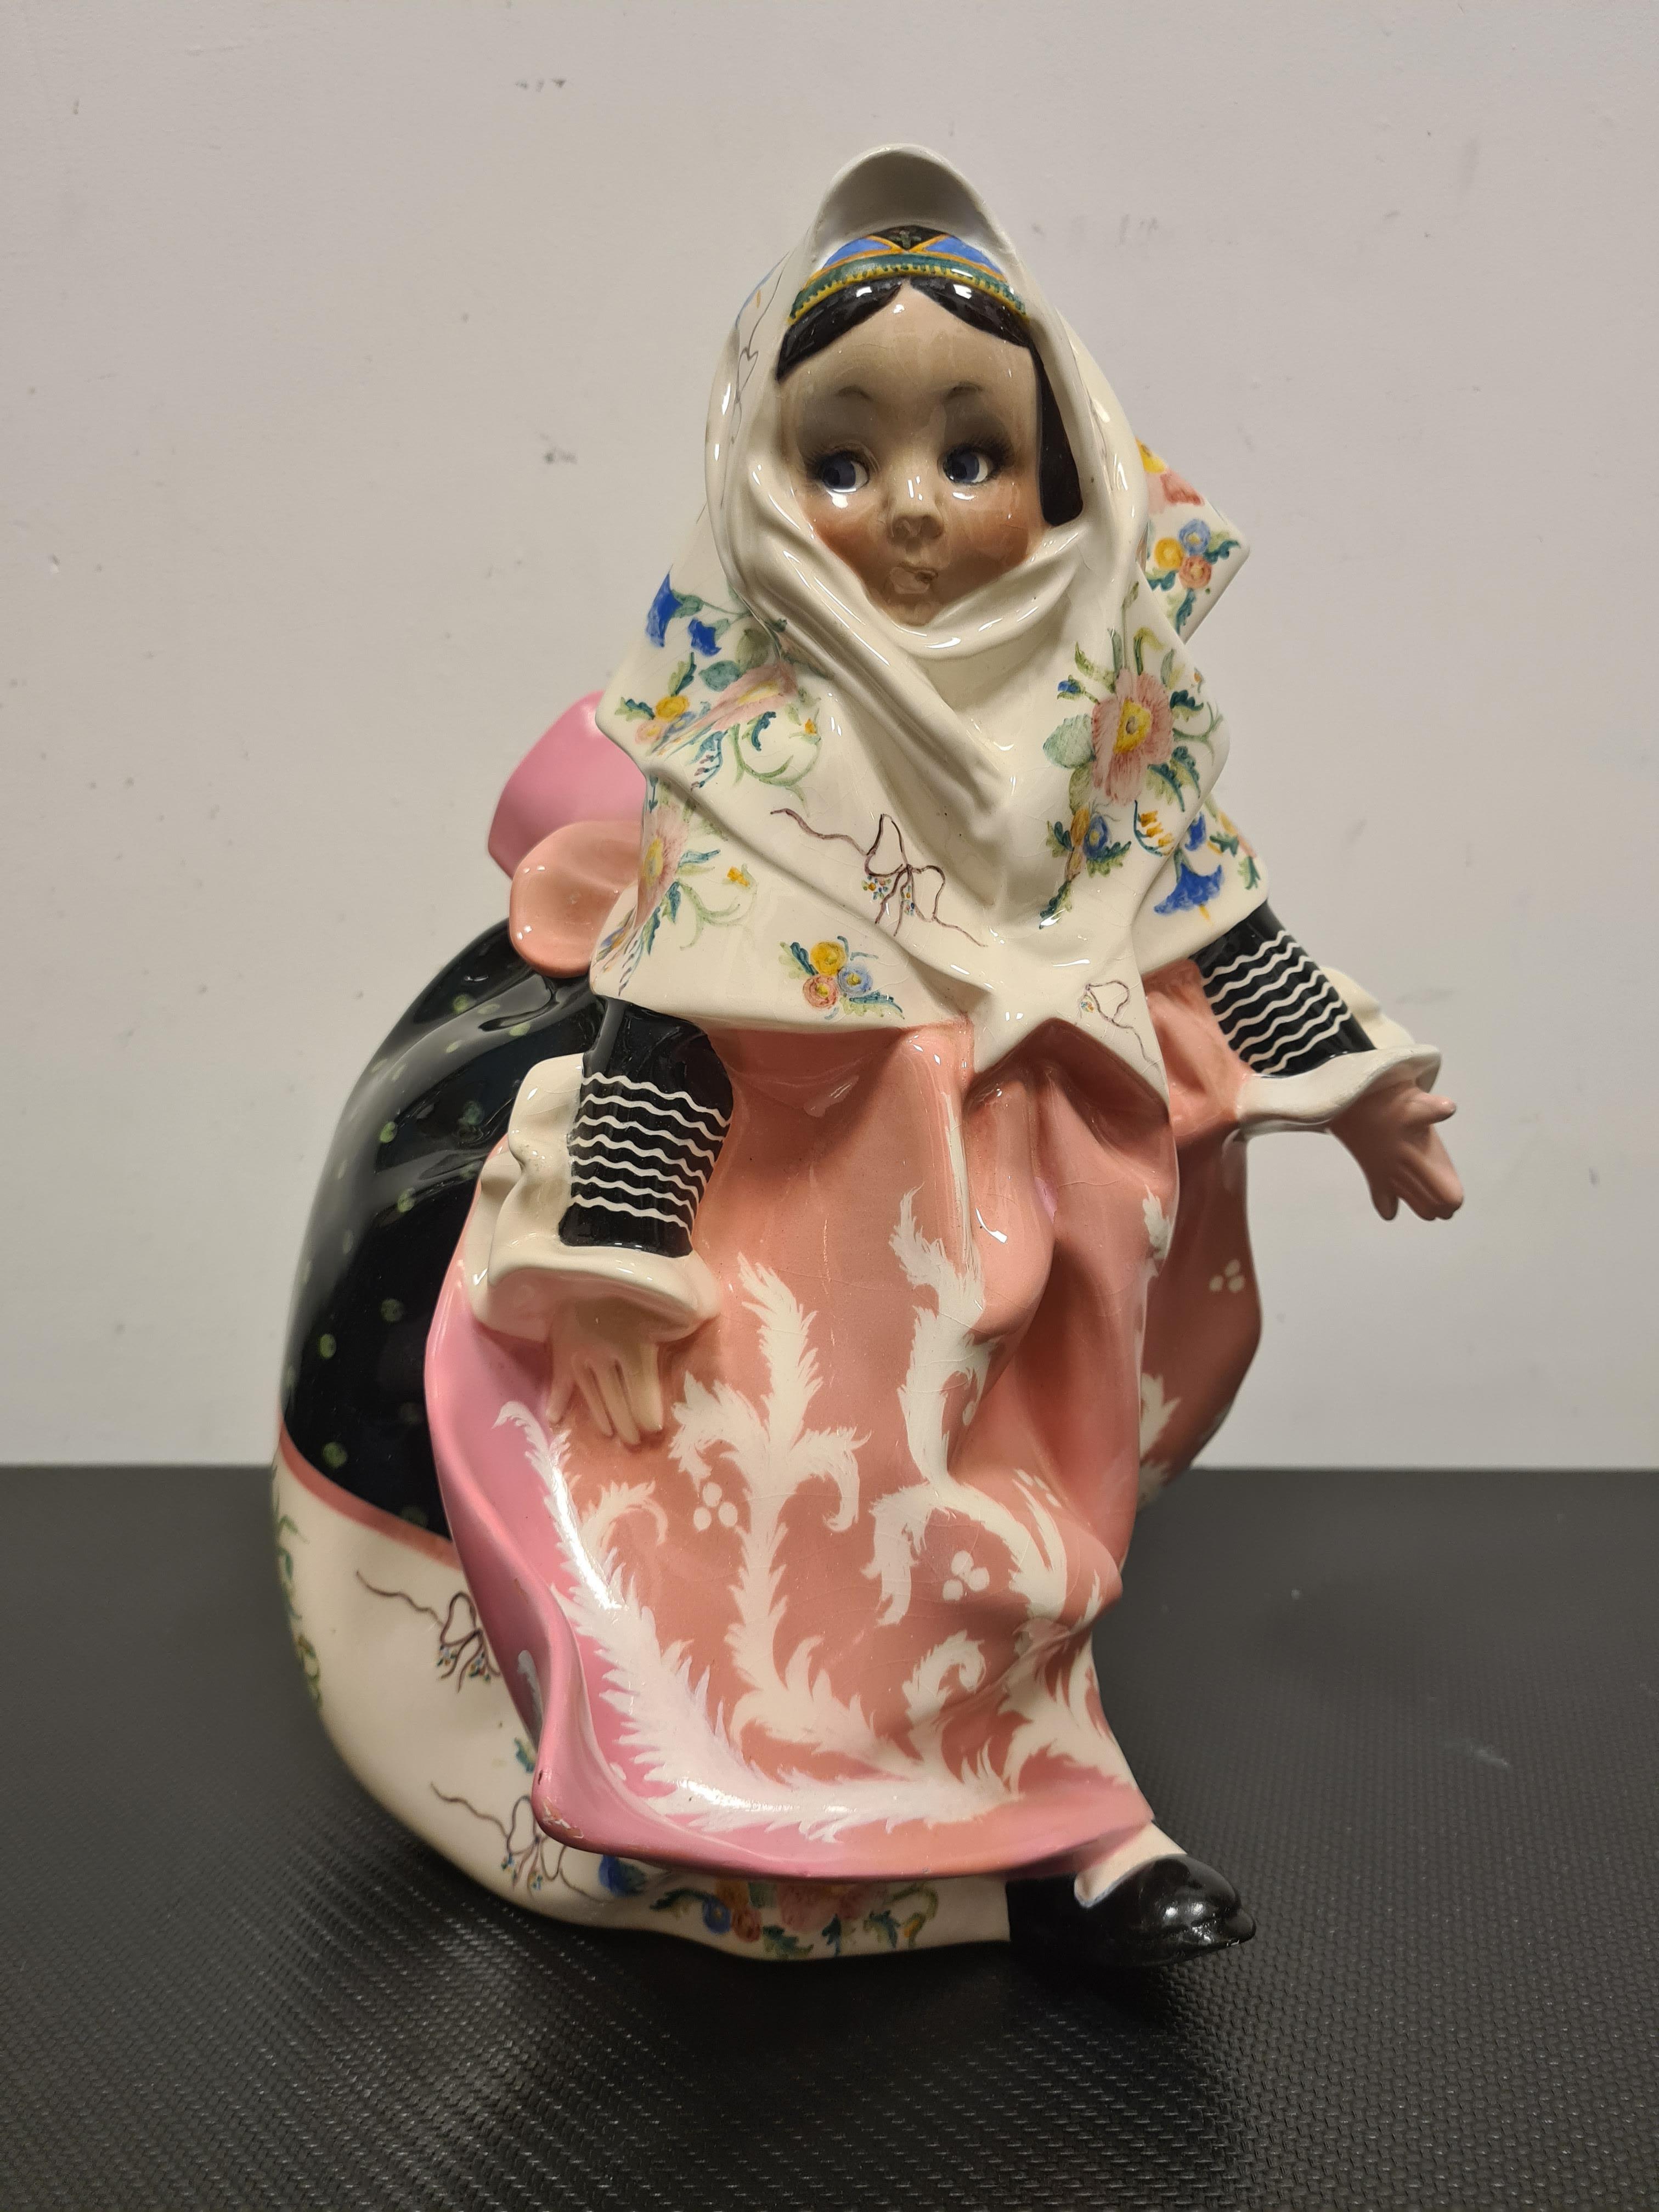 Céramique représentant une jeune fille sarde dessinée par Sandro Vacchetti.

Délicieuse statue en céramique représentant une adorable petite fille vêtue d'une robe traditionnelle sarde.

L'œuvre est le modèle n° 254 et a été conçue par Sandro